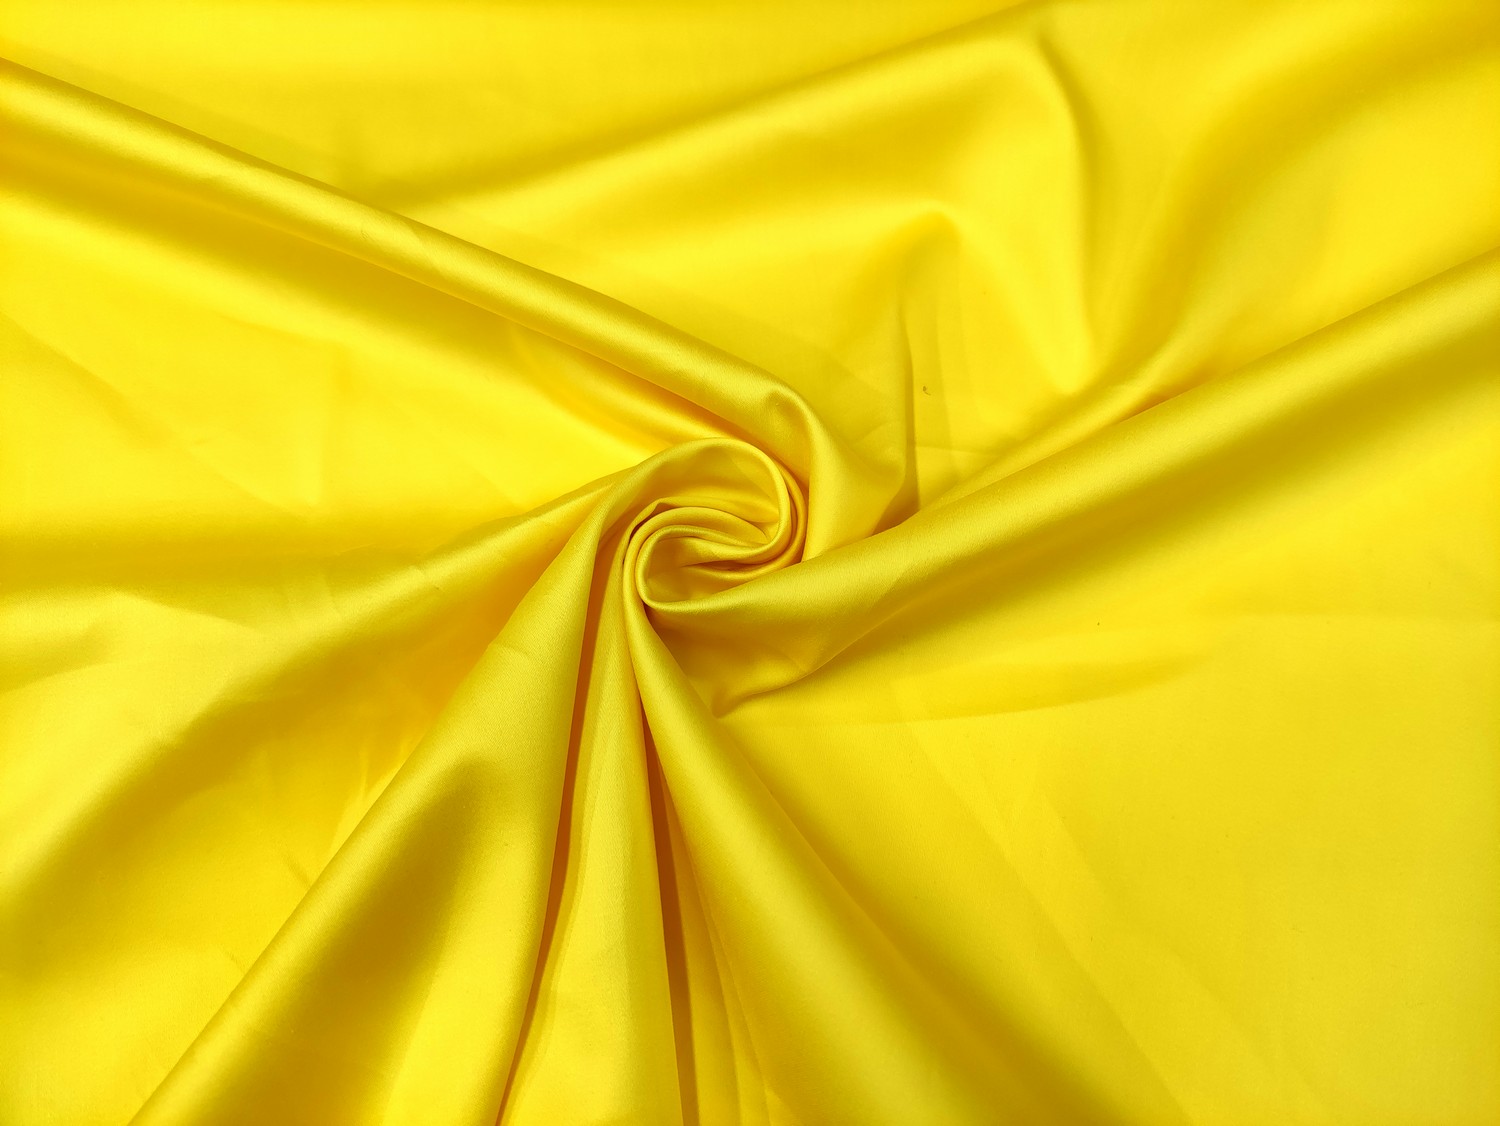 Tessuto Rasatello di cotone in tinta unita giallo - Iaia Tessuti